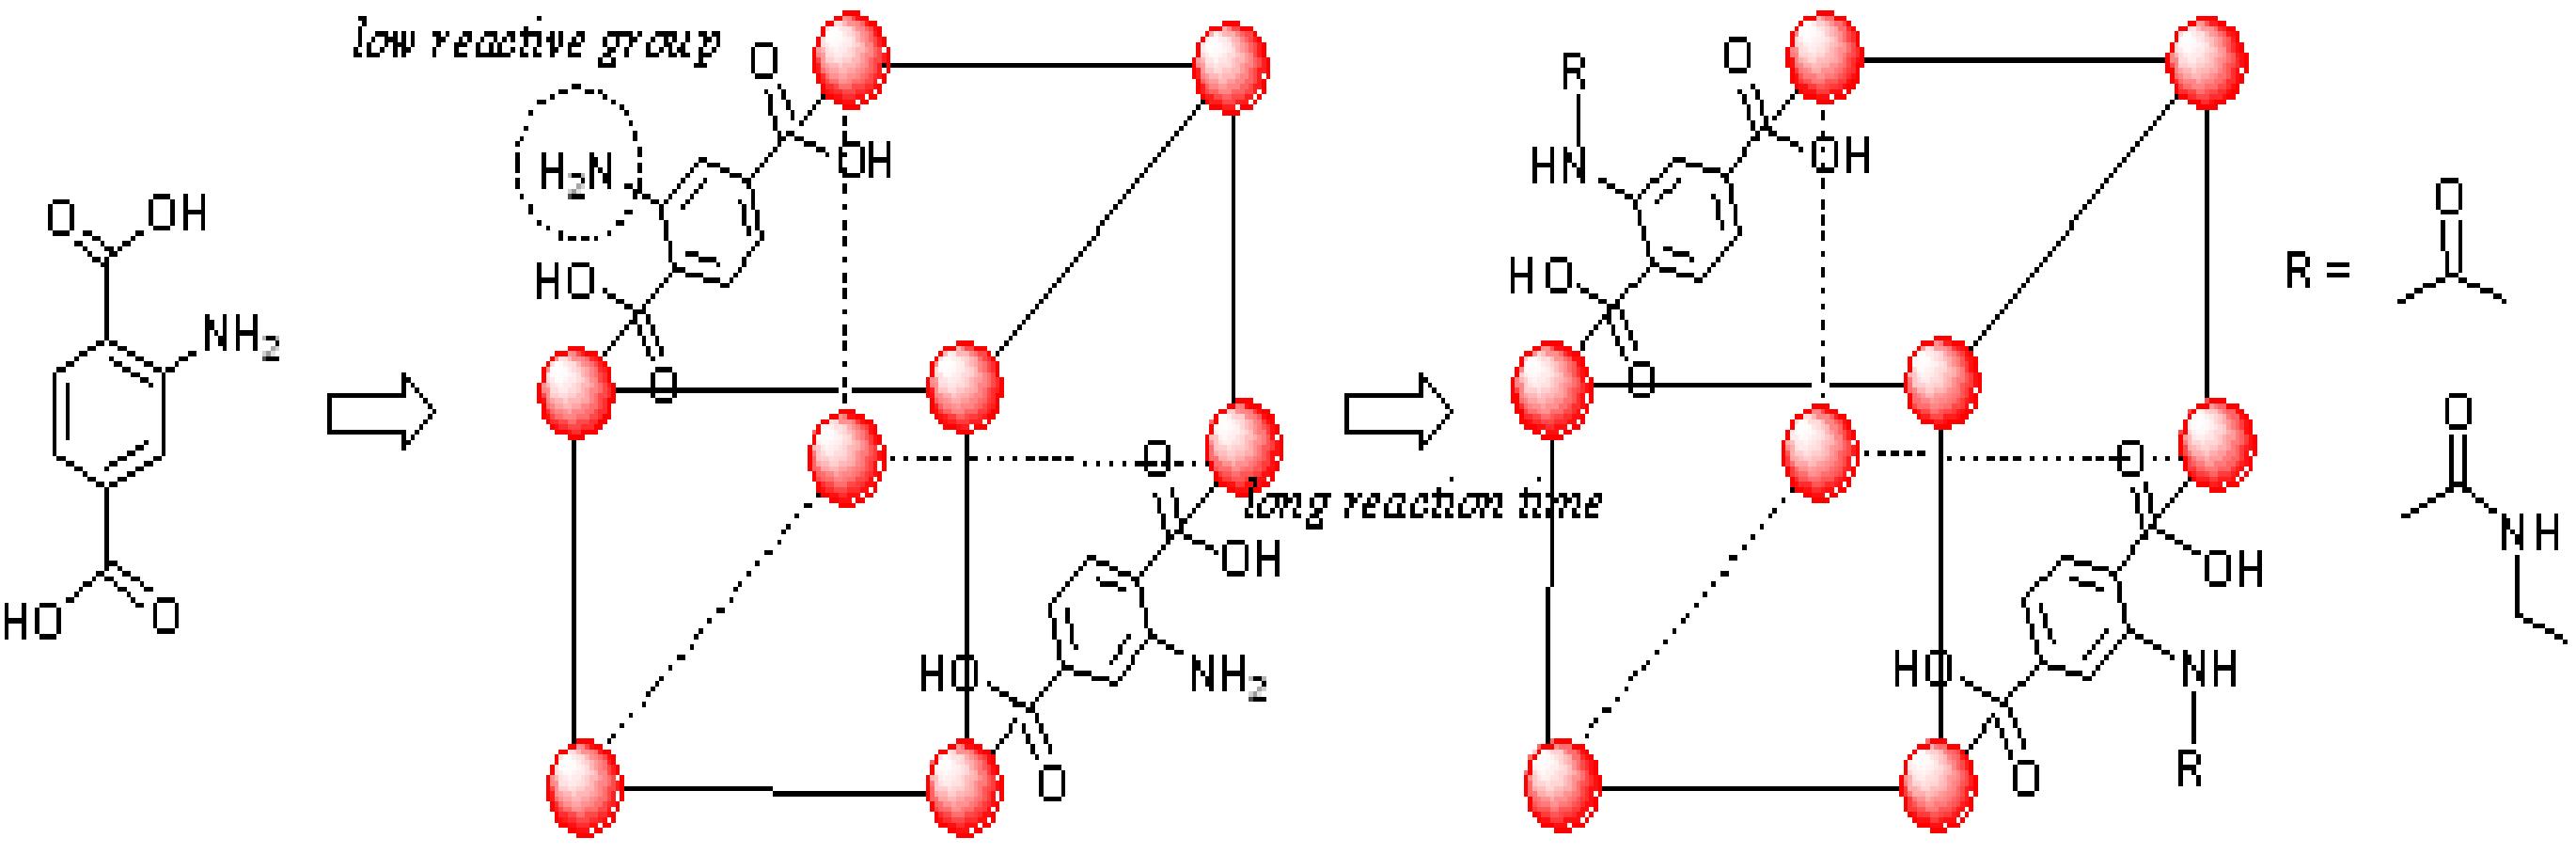 대표적인 postsynthetic covalent modification의 예.